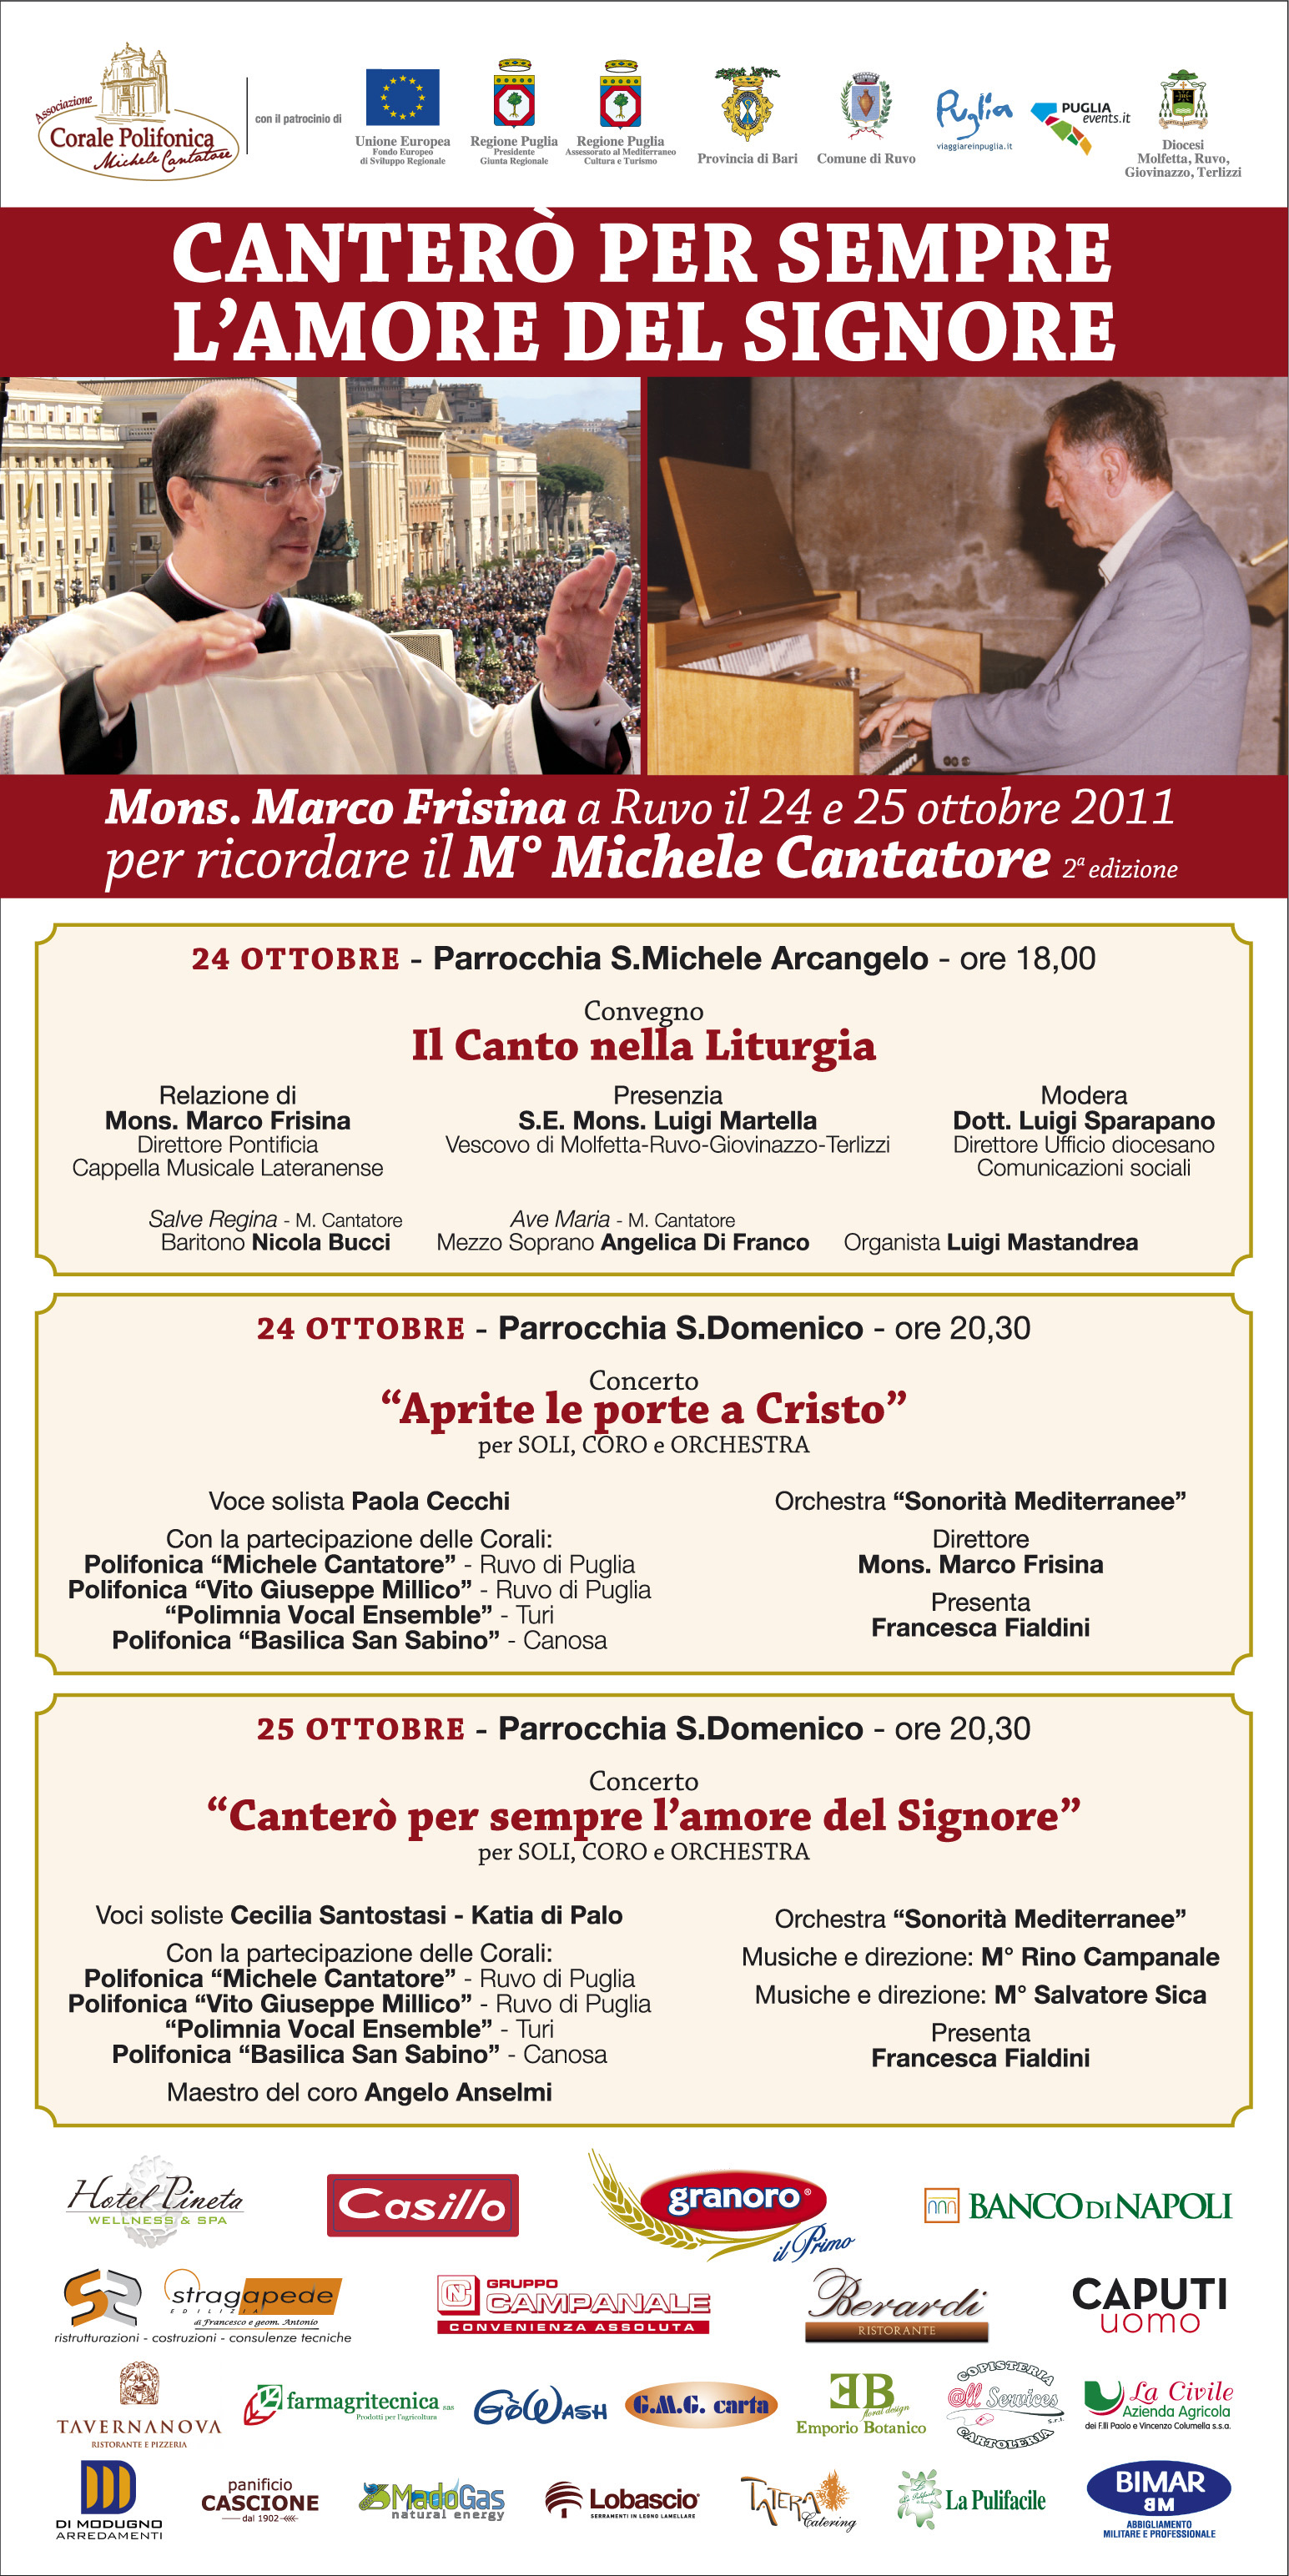 Una conferenza e due concerti per ricordare il Maestro Michele Cantatore, con la presenza di Marco Frisina